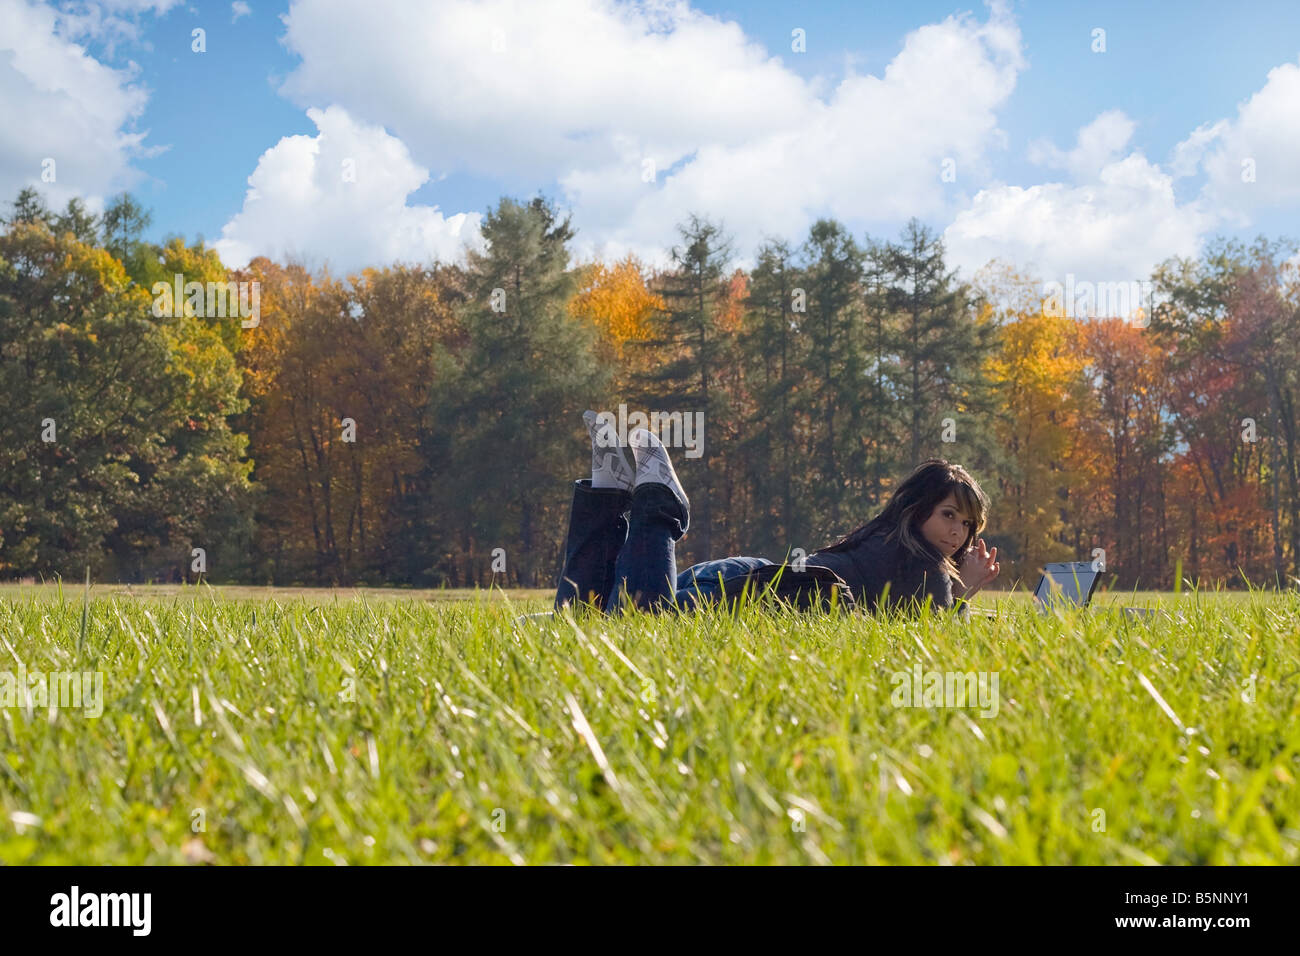 Un jeune étudiant en utilisant son ordinateur portable tout en jetant dans l'herbe par une belle journée Banque D'Images